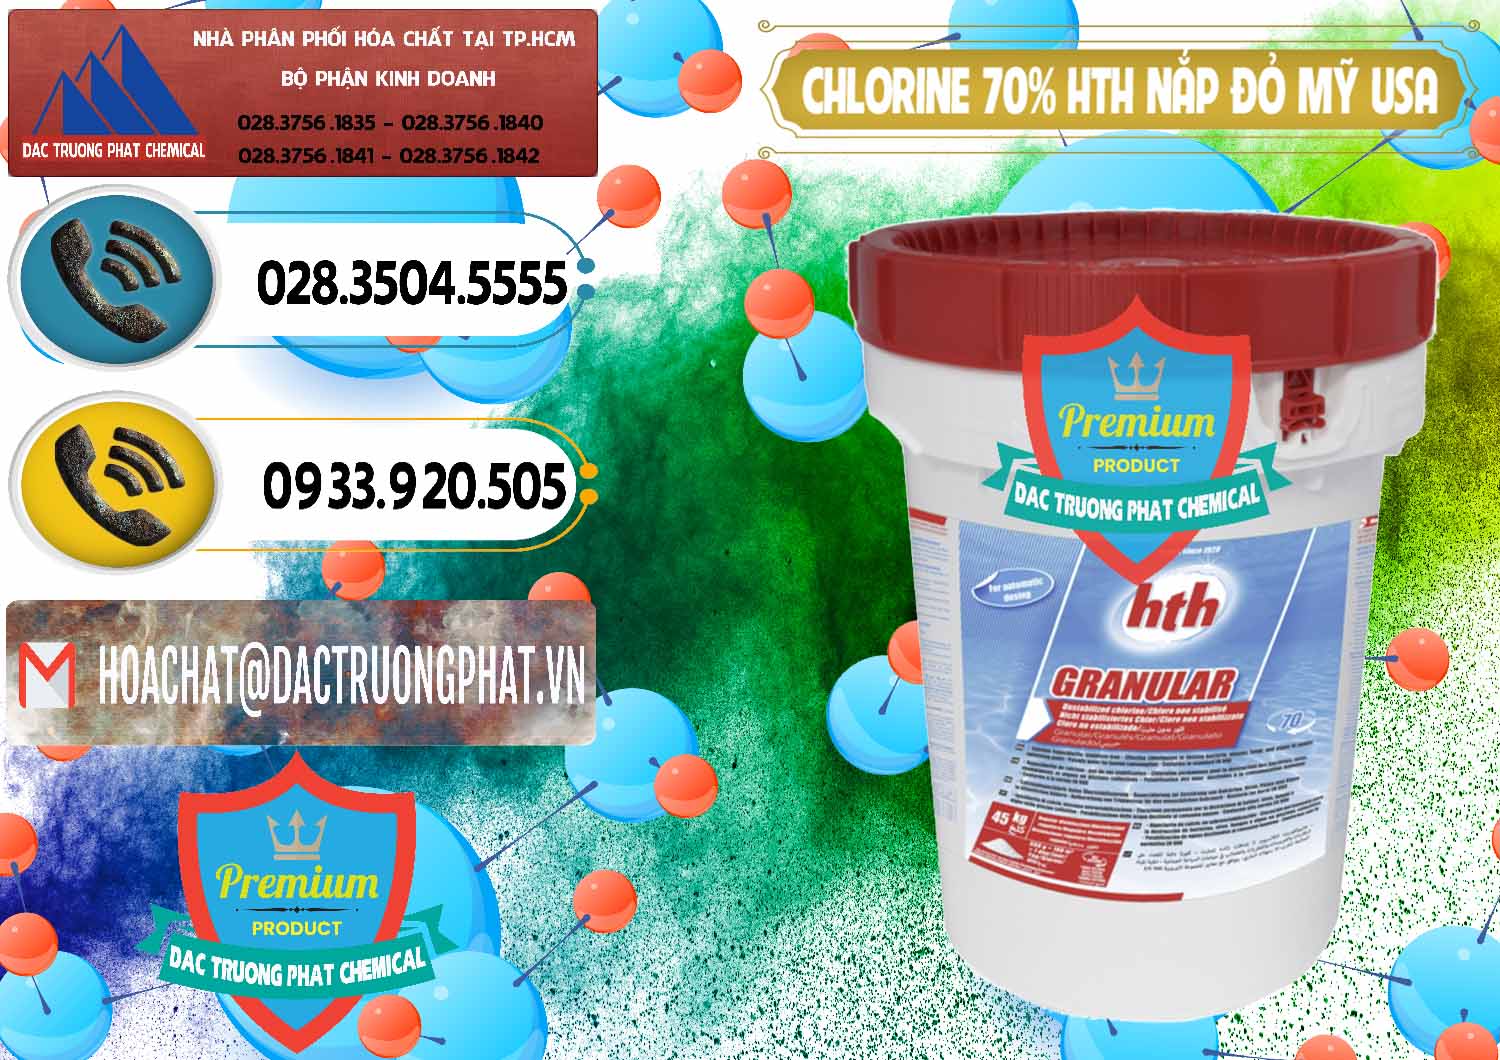 Công ty nhập khẩu và bán Clorin – Chlorine 70% HTH Nắp Đỏ Mỹ Usa - 0244 - Chuyên phân phối & cung ứng hóa chất tại TP.HCM - hoachatdetnhuom.vn